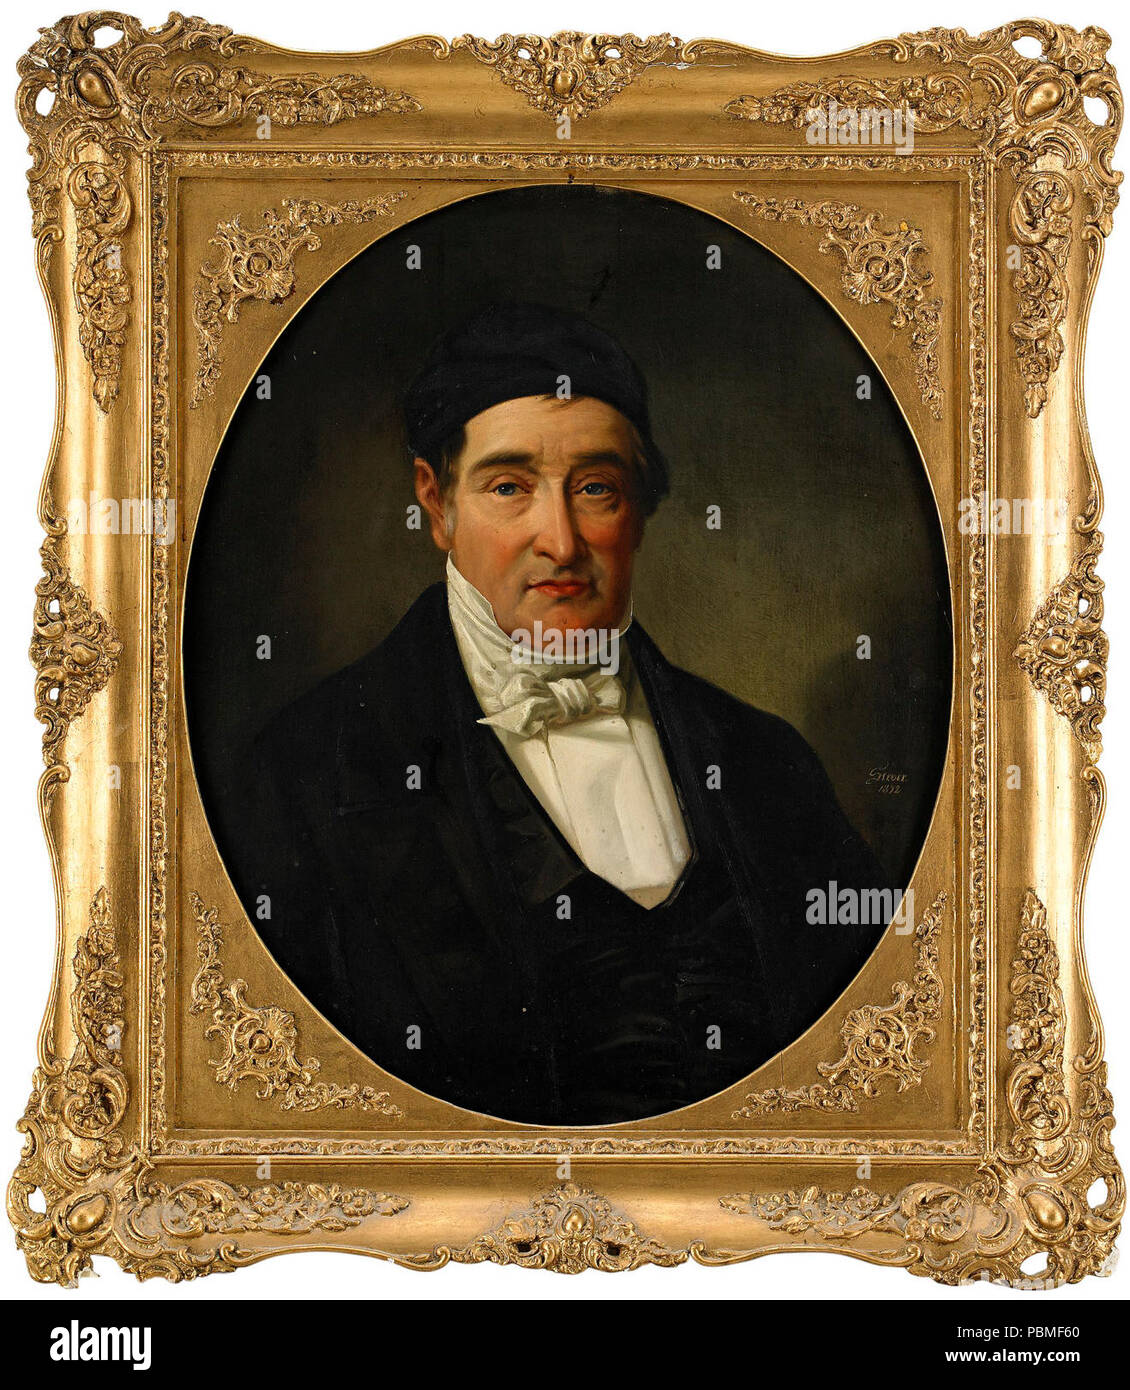 Aaron Levy Lamm (1821-1877). Stock Photo